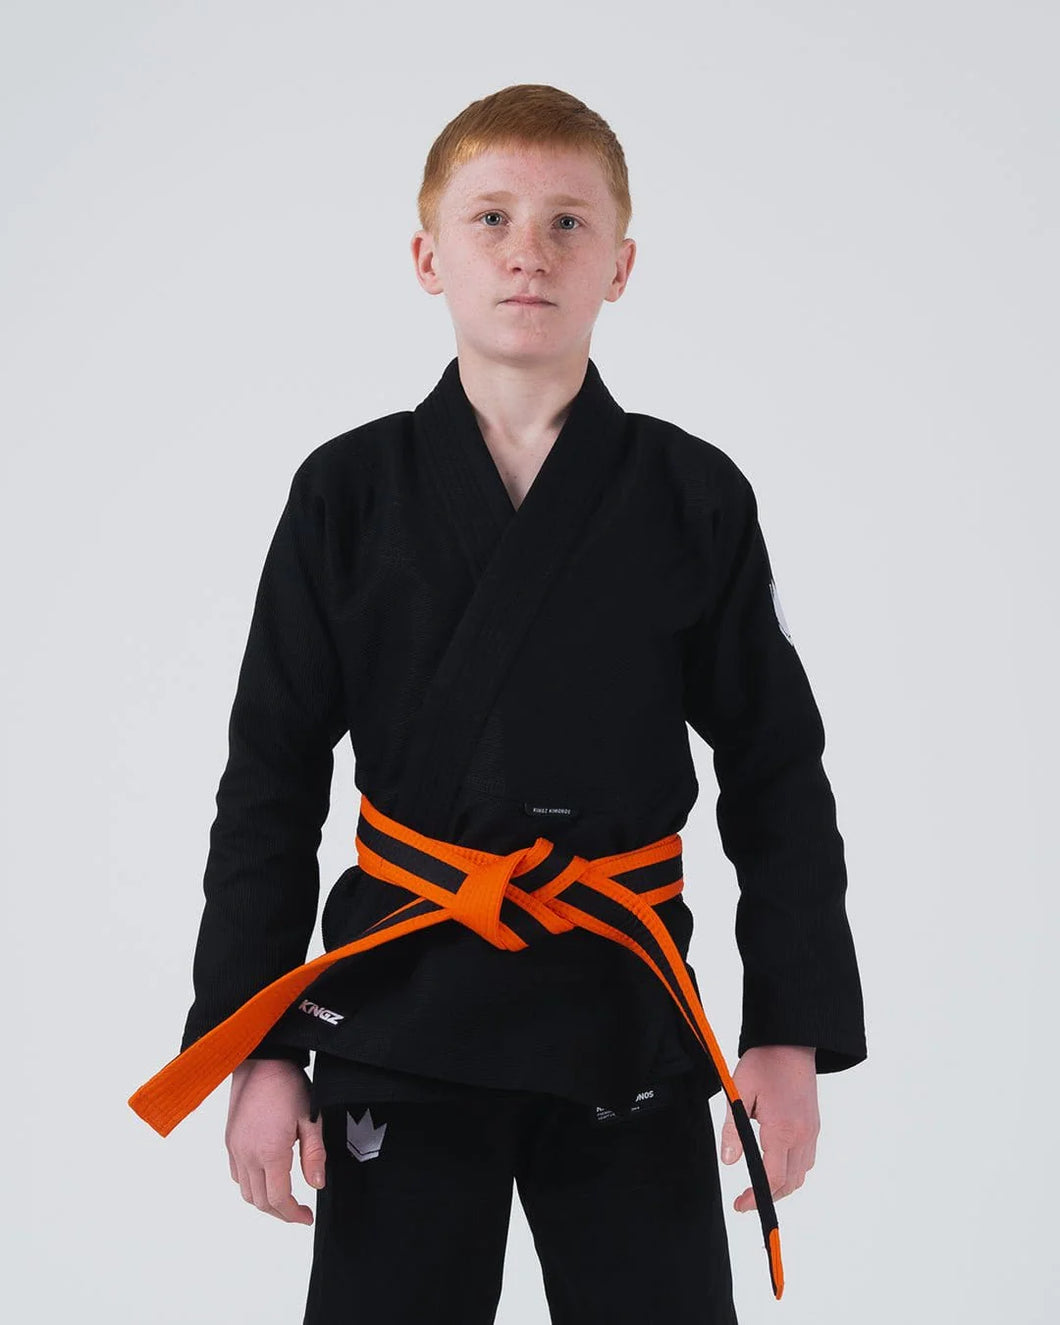 Kimono BJJ (GI) Kingz Kore Youth 2.0. Black with white belt